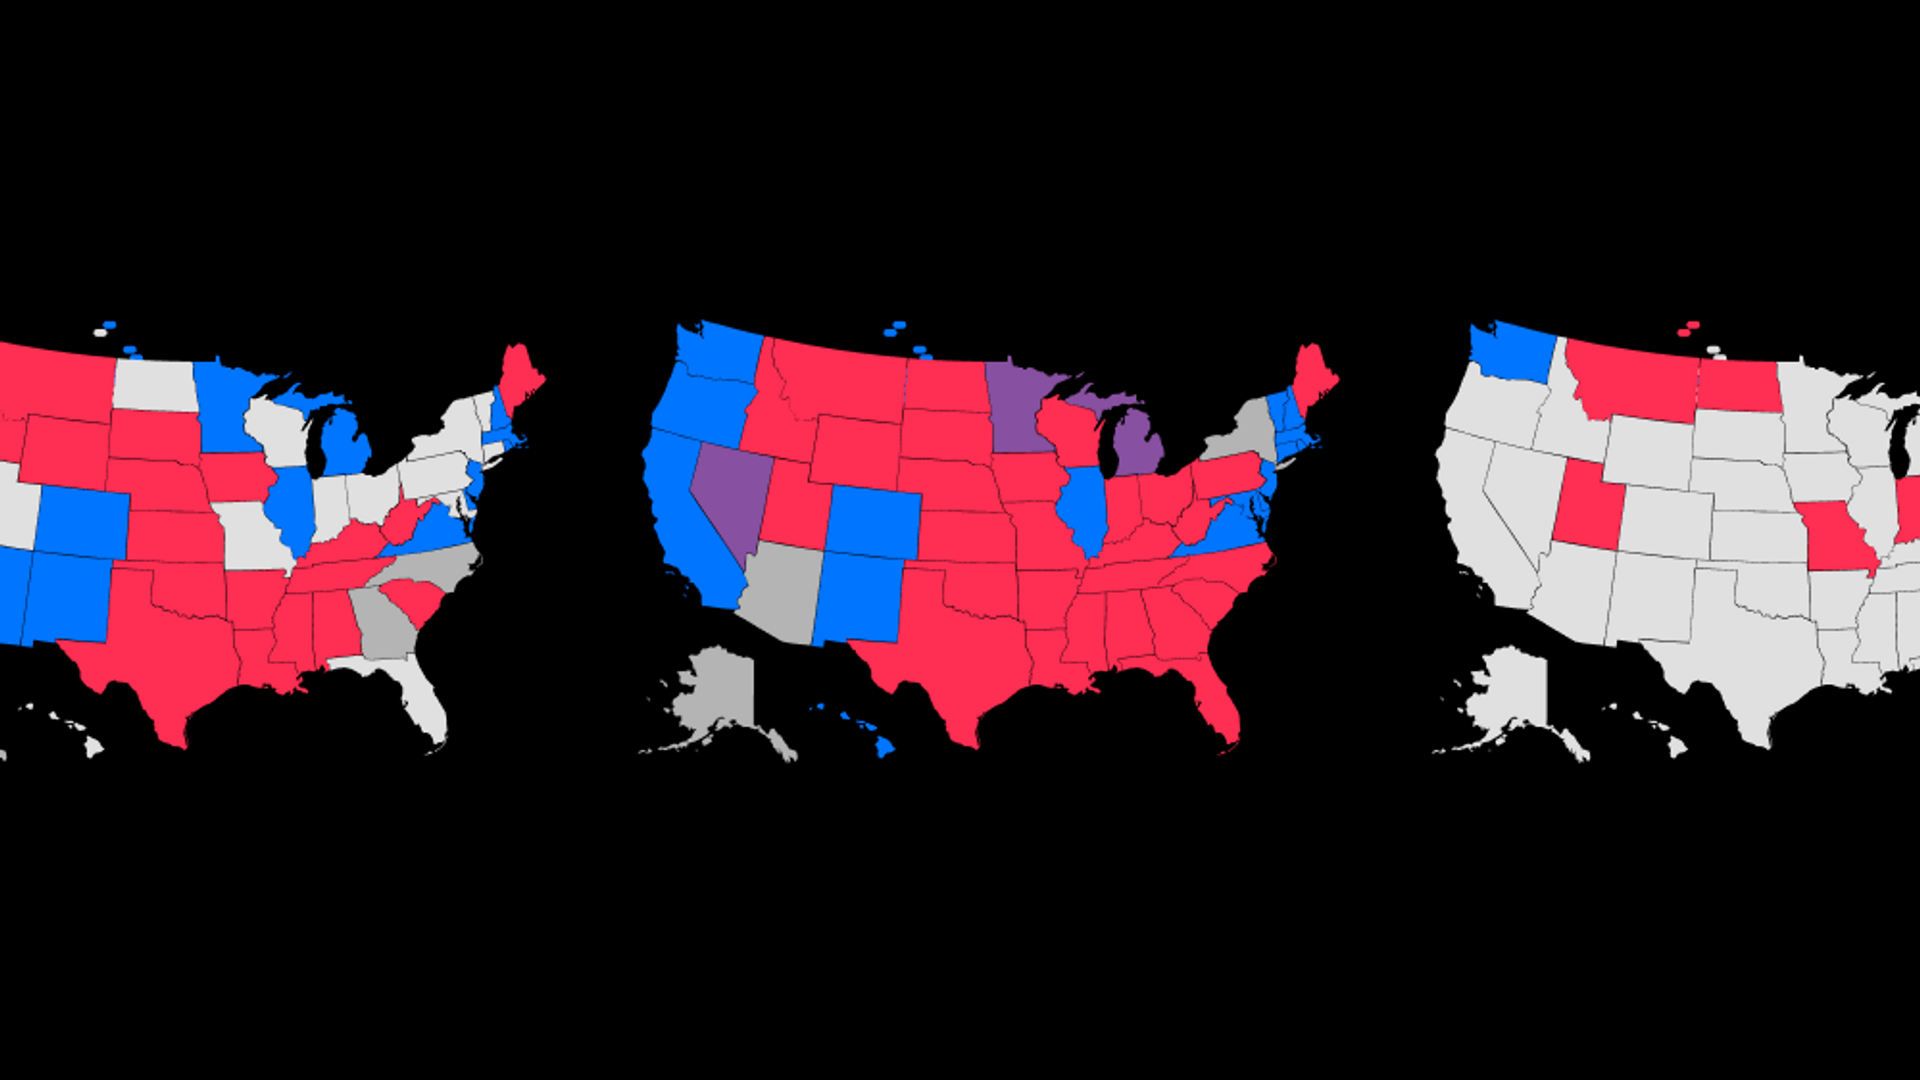 Выборы республиканской партии. Партии США республиканцы и демократы. Демократия в США инфографика. Инфографика США. Американские партии на координатах.